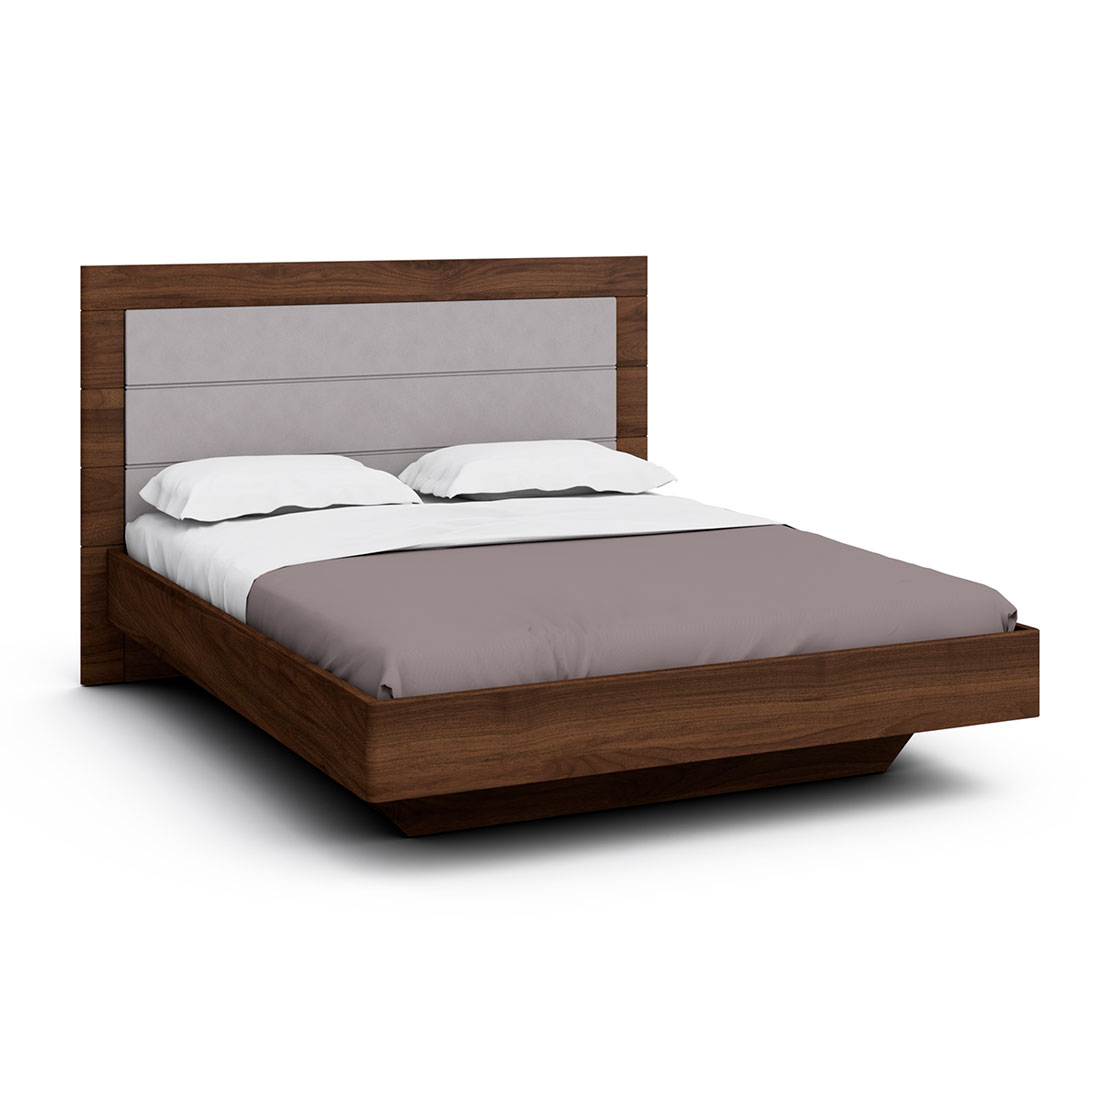 Двуспальная кровать с ящиком для белья Илма-2 (орех Коламбия/Kenya Grey)